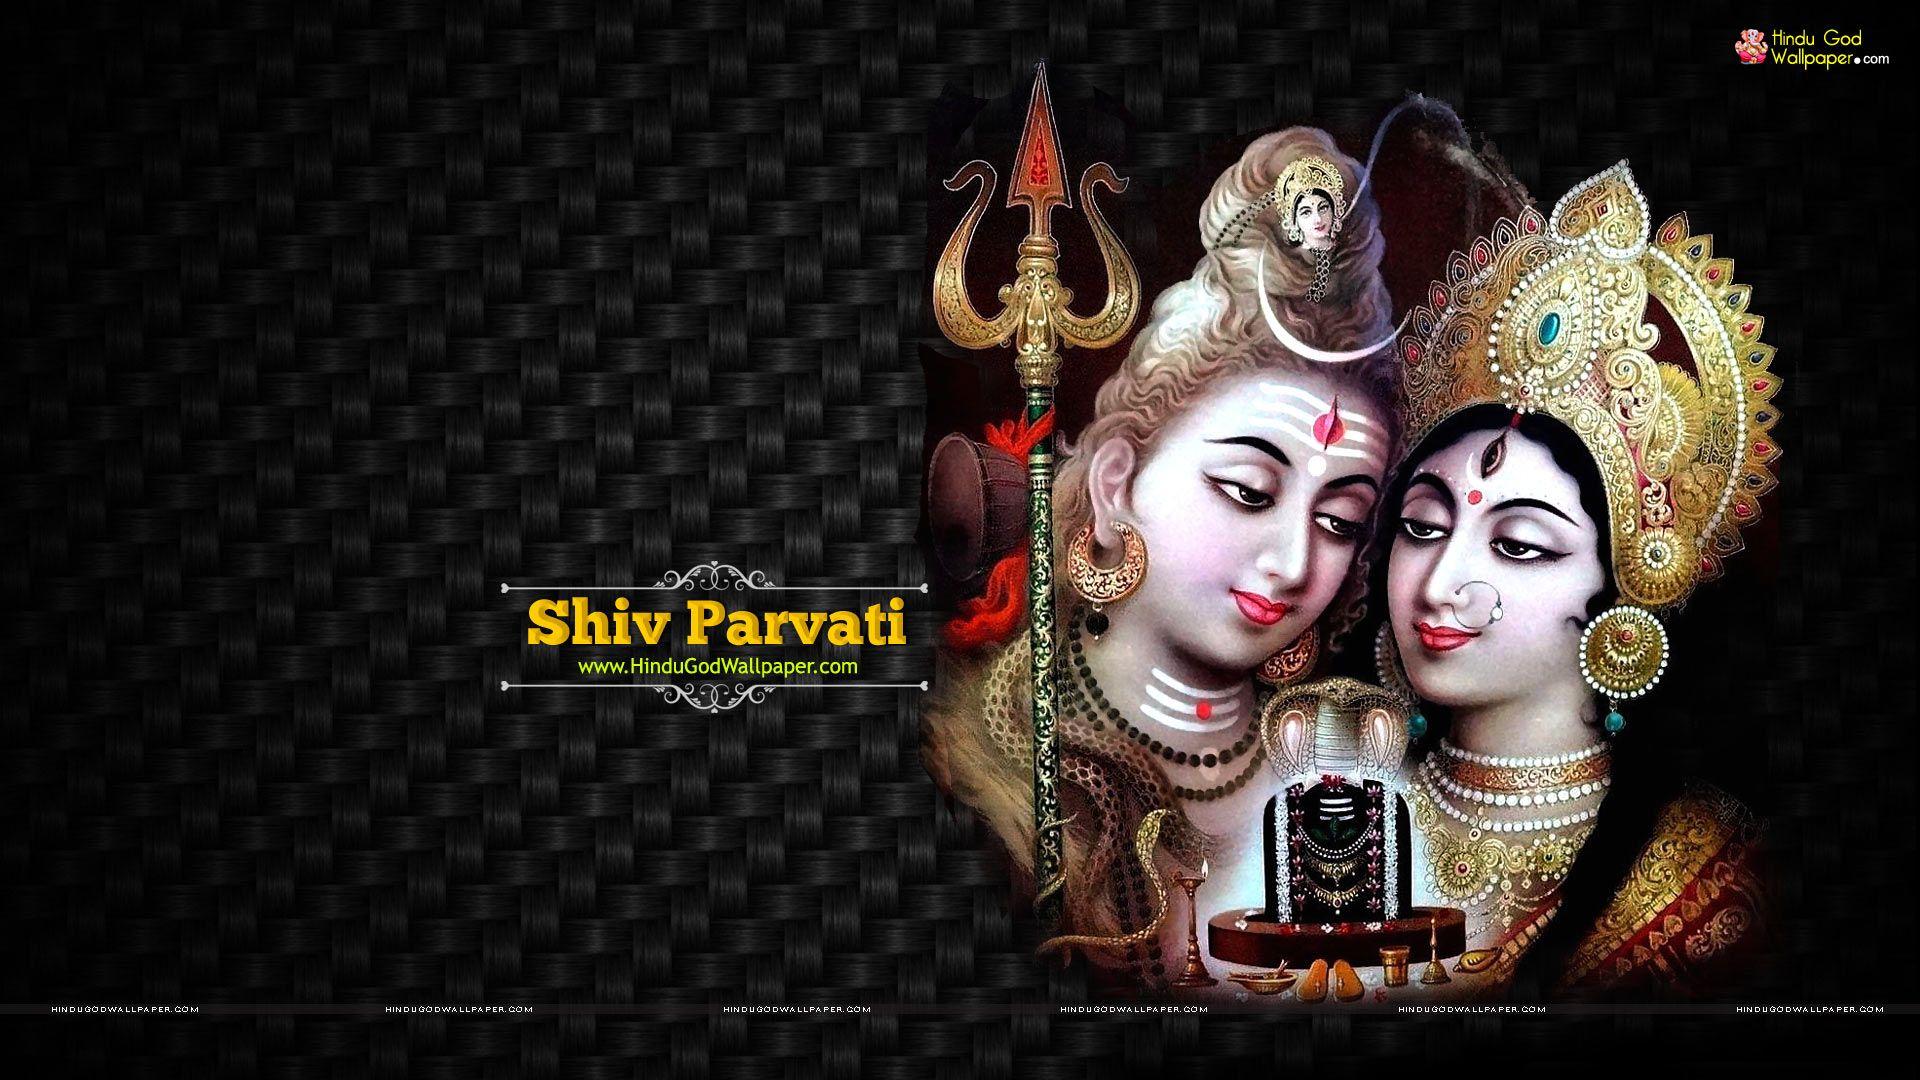 Lord Shiv Parvati HD Wallpaper Free Download. Lord Shiva Parvati